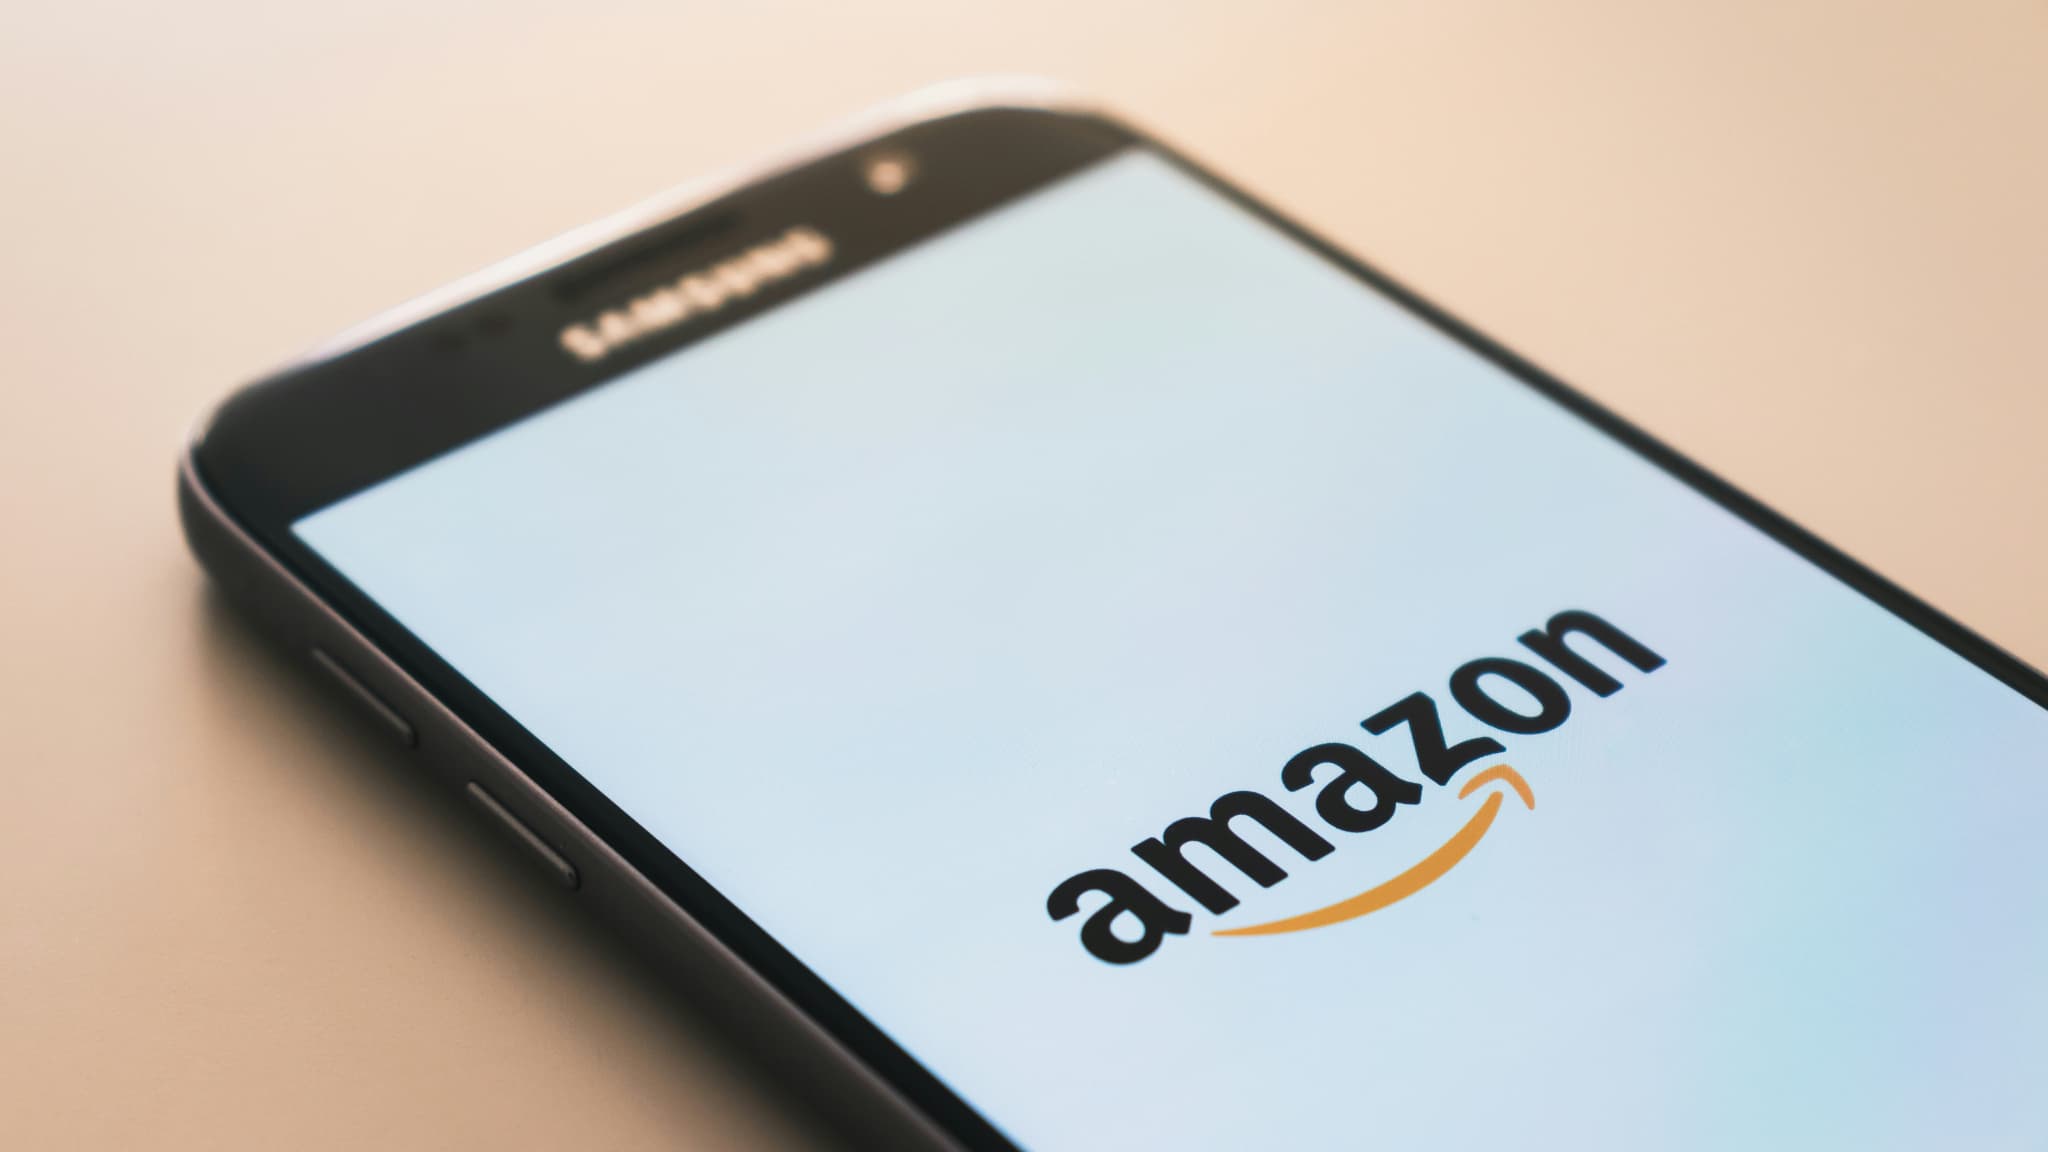 Amazon halbiert die Rückgabezeiten für elektronische Produkte in Deutschland